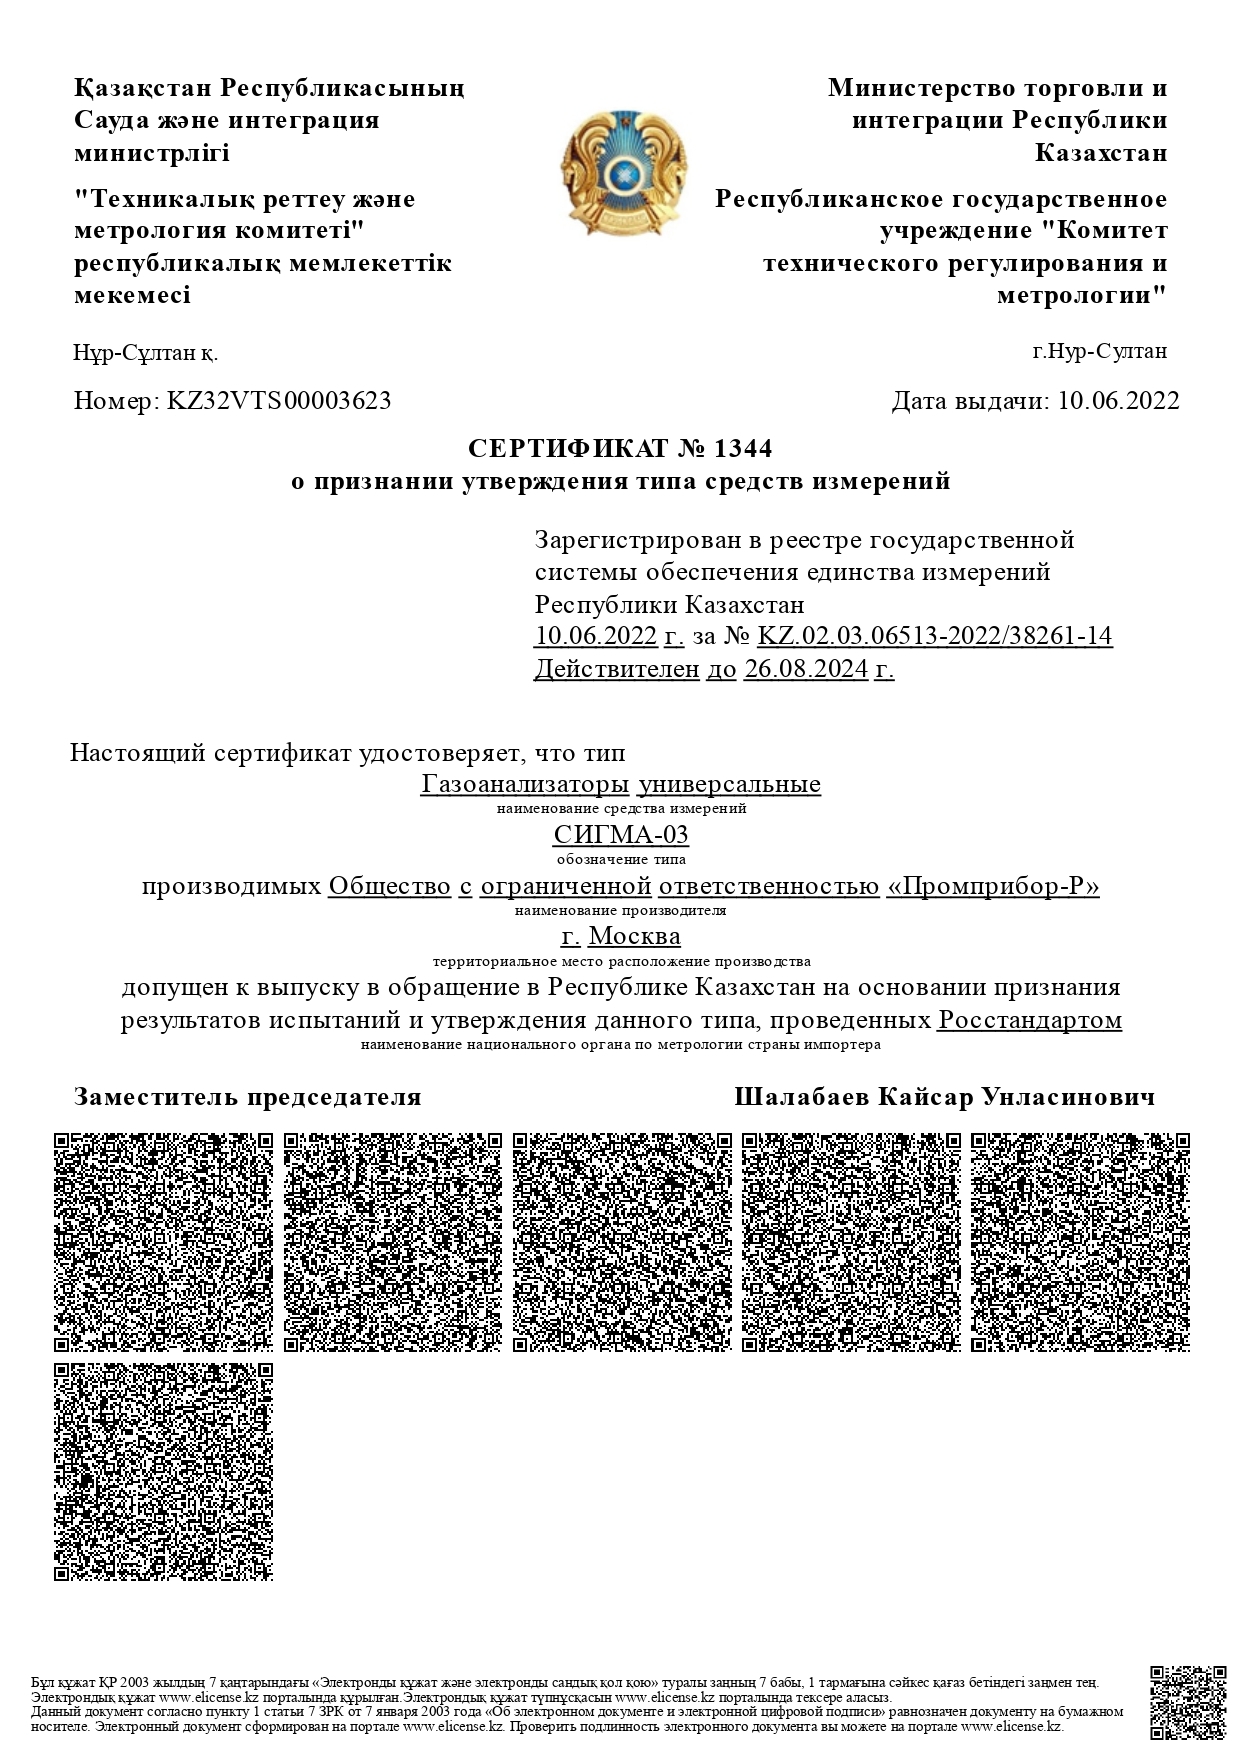 Газоанализатор СИГМА-03 внесен в реестр средств измерений Республики Казахстан